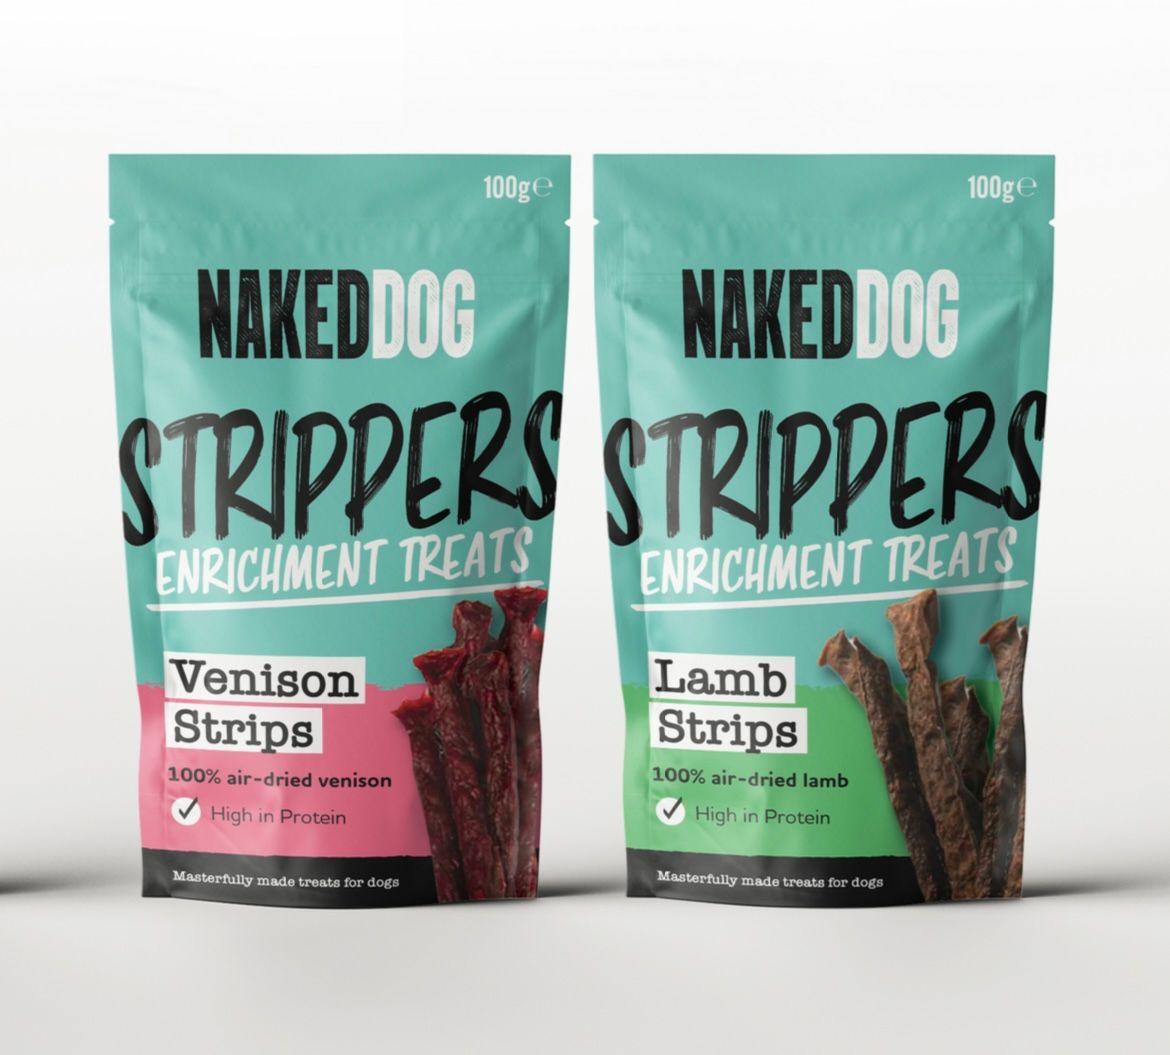 Naked Dog Strippers - Venison Strips - North East Pet Shop Naked Dog